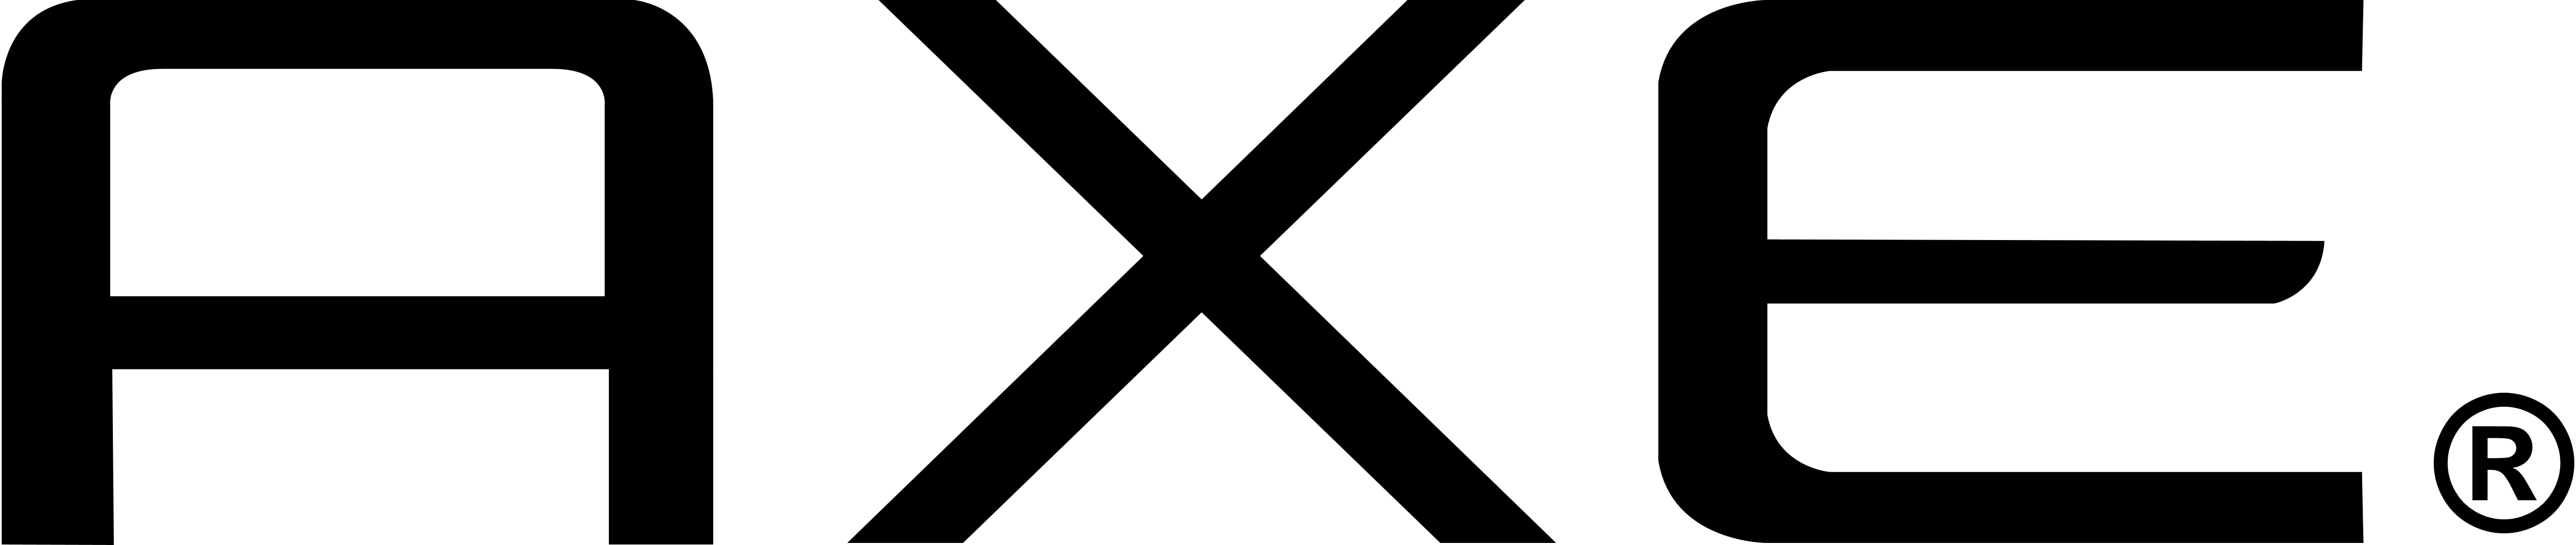 Axe. Axe Logo - Axe Black, Transparent background PNG HD thumbnail